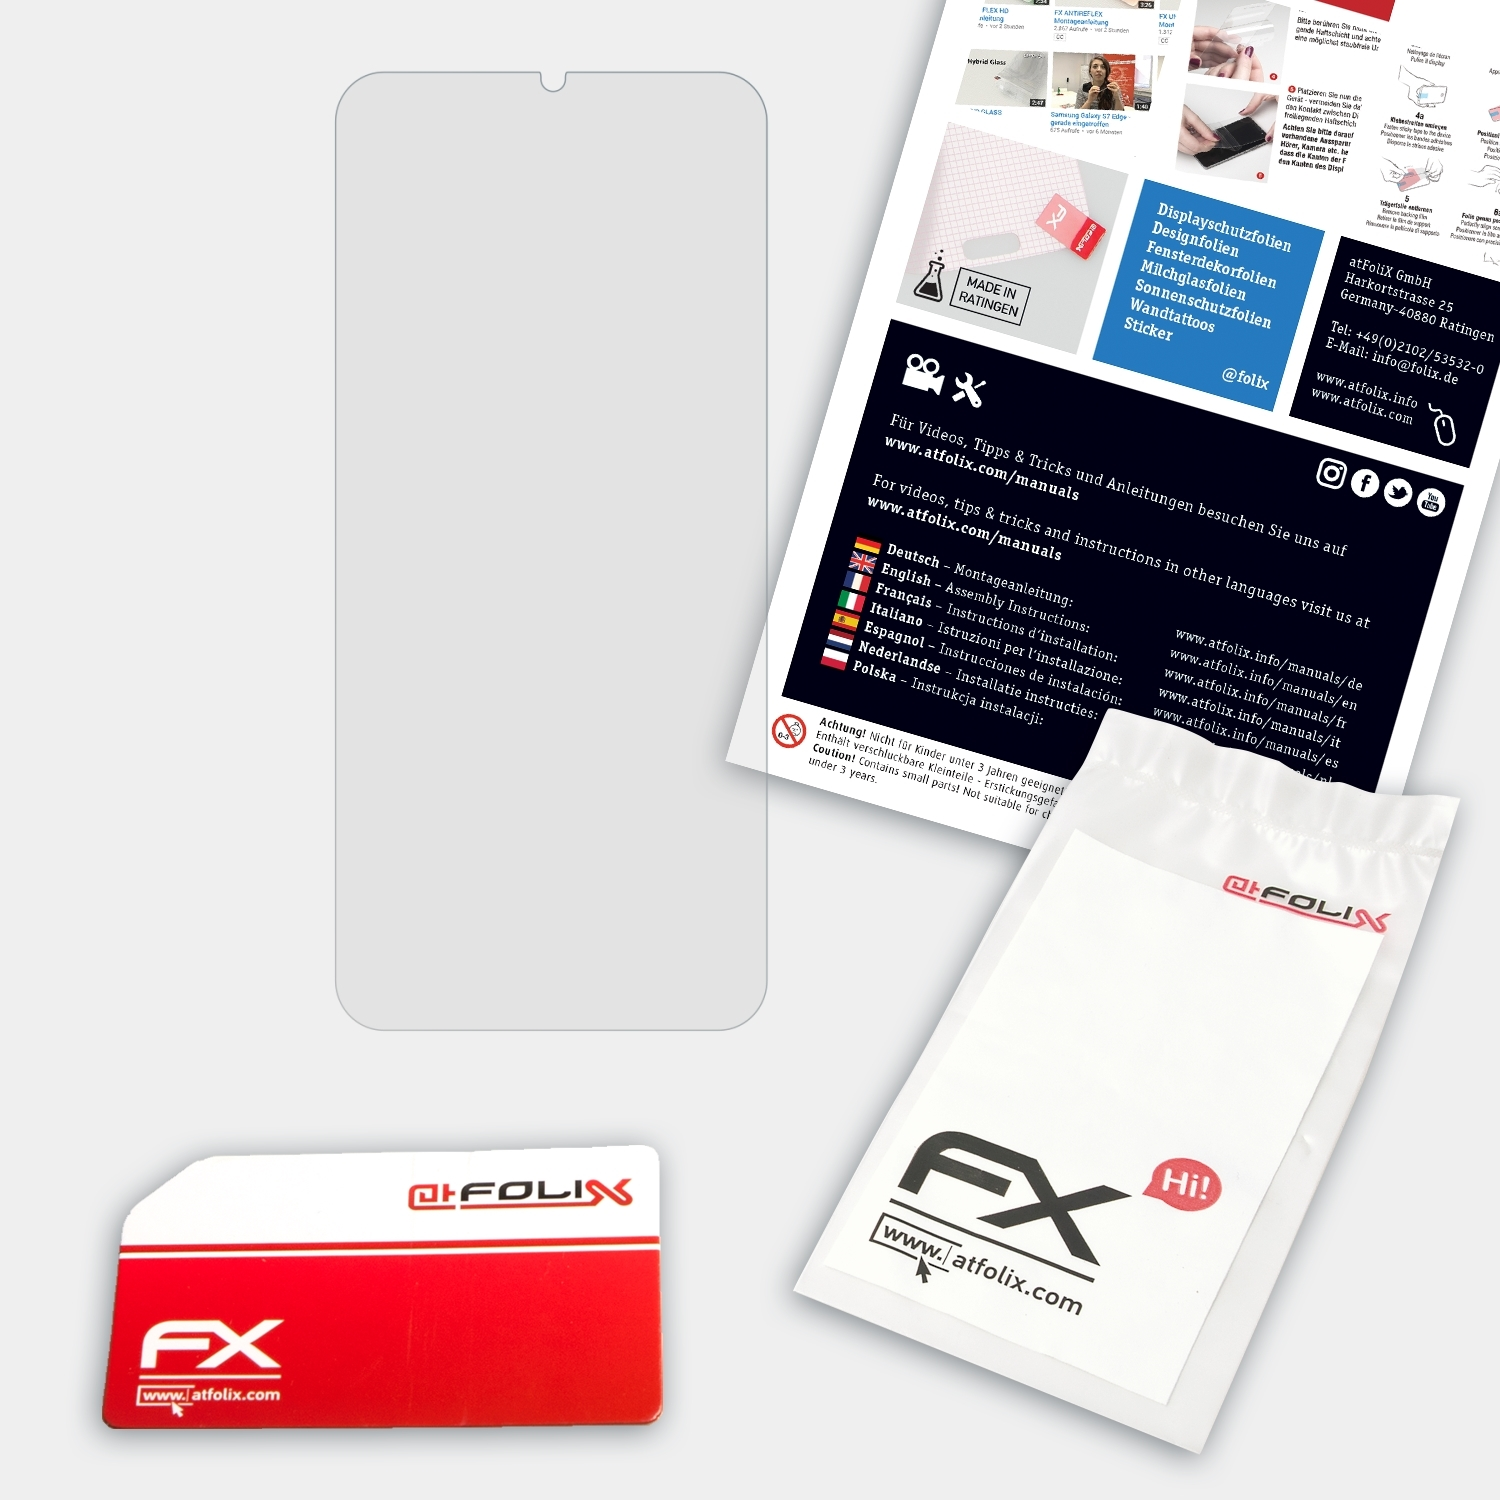 FX-Hybrid-Glass ATFOLIX 6T) OnePlus Schutzglas(für